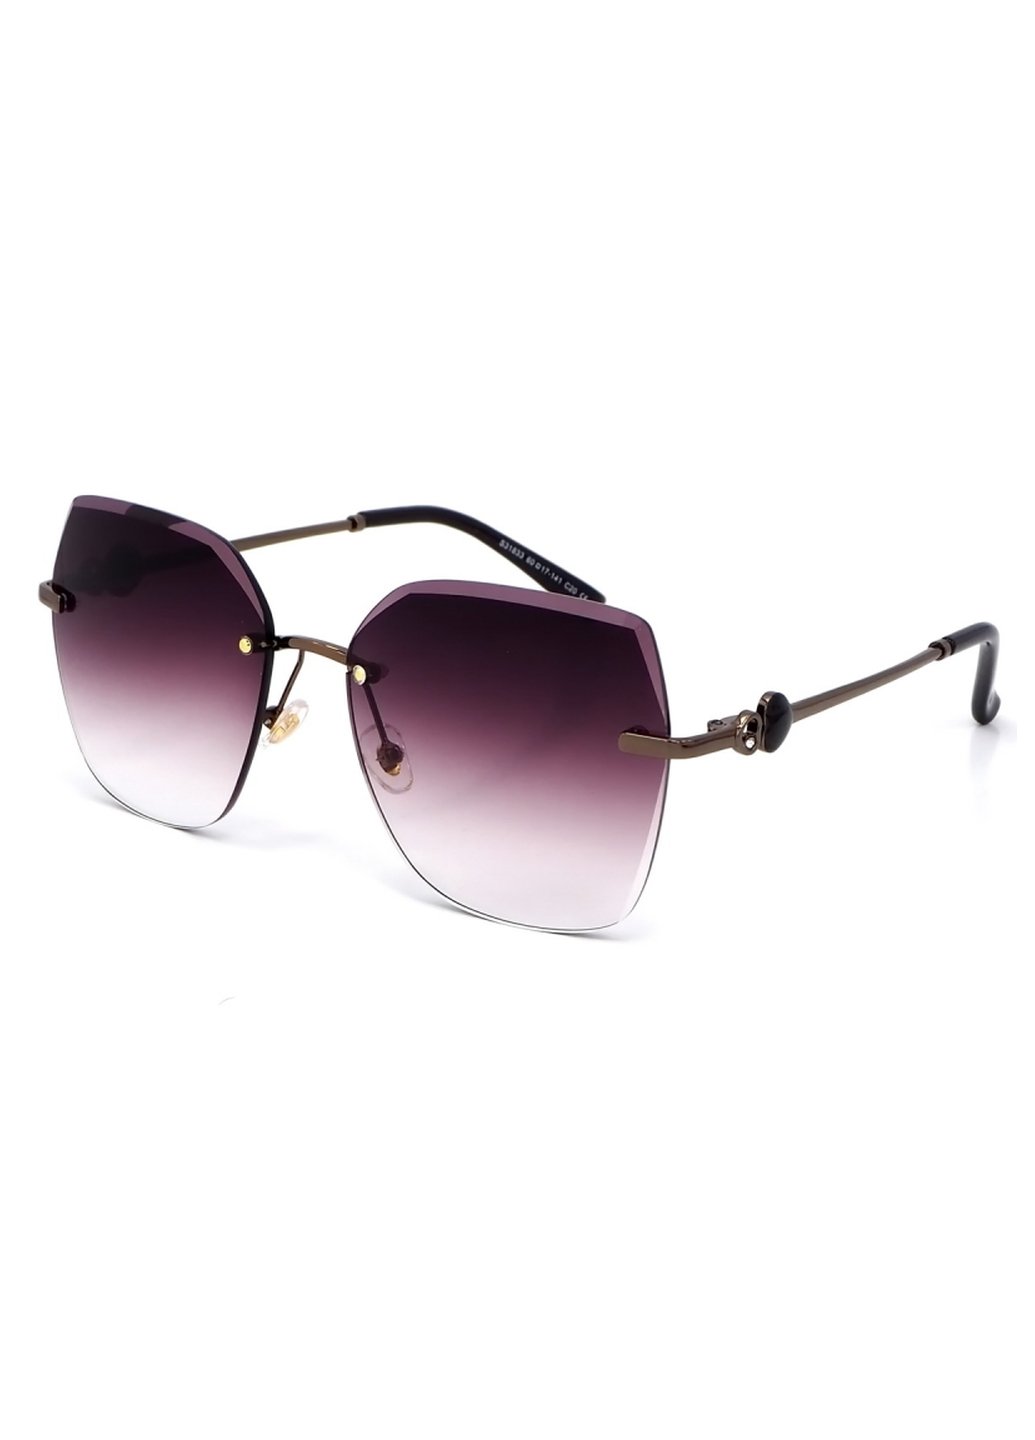 Купить Женские солнцезащитные очки Merlini с поляризацией S31833 117090 - Черный в интернет-магазине